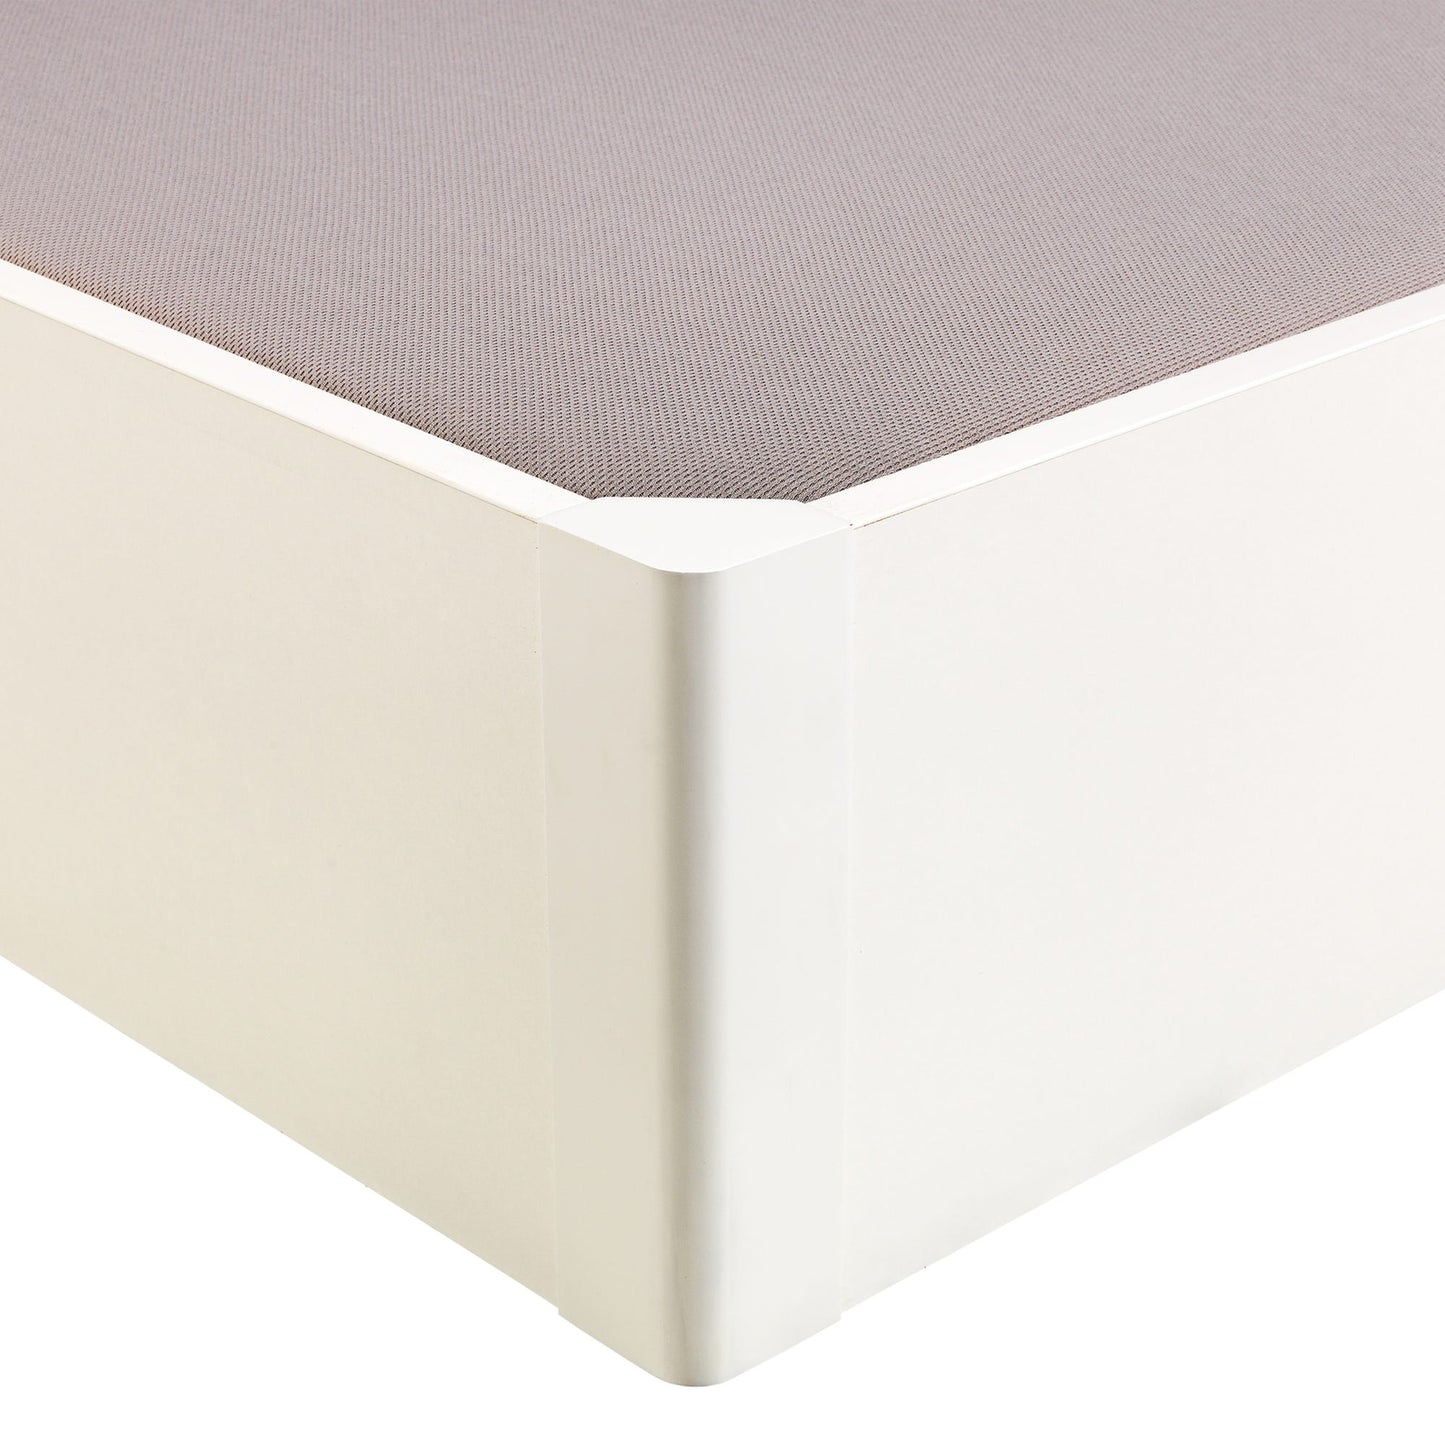 Canapé abatible de madera tapa única de color blanco - DESIGN - 150x210